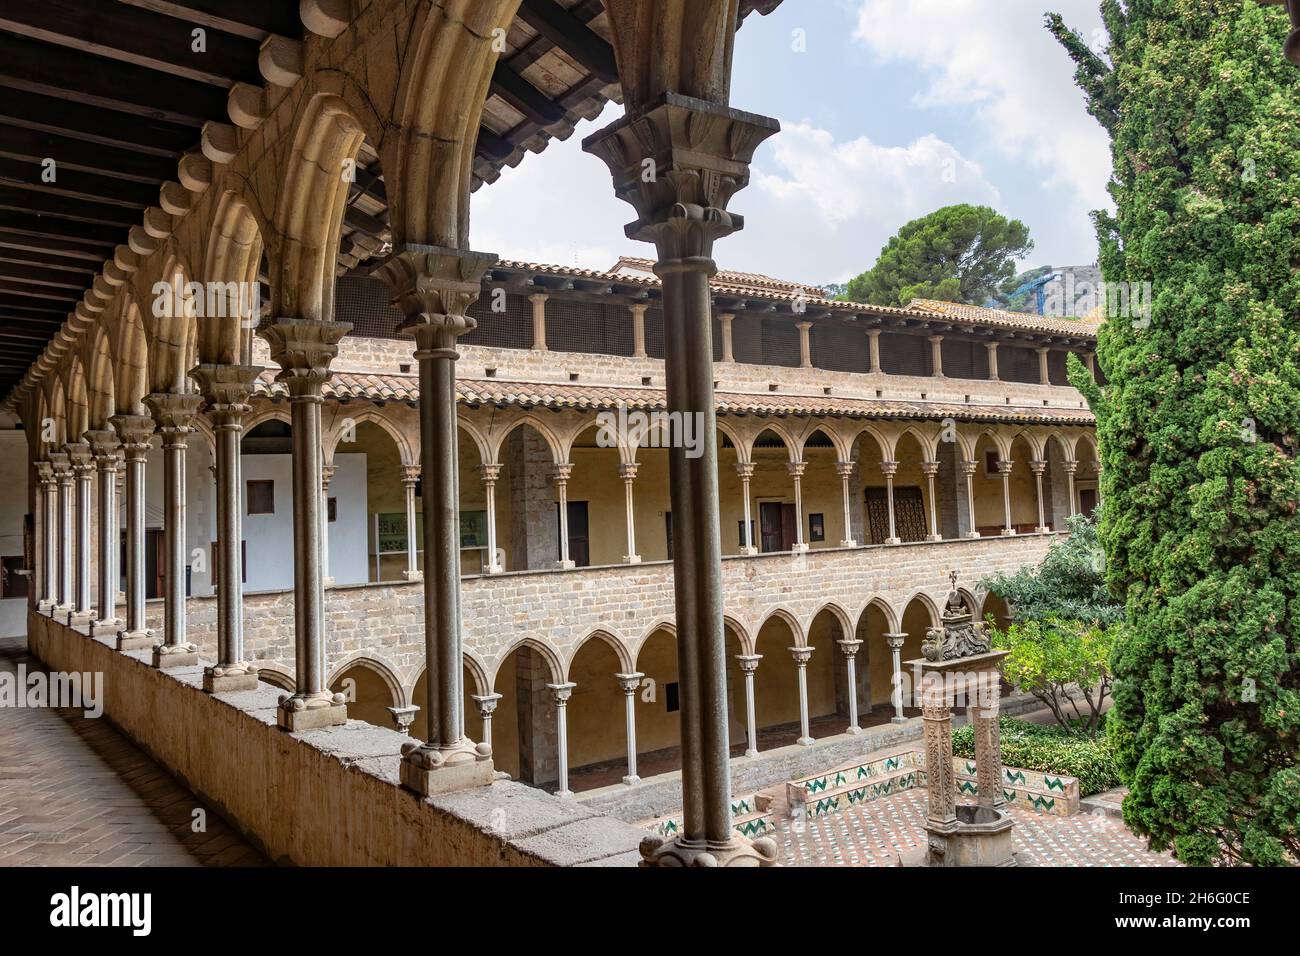 Barcelona, España - 24 de septiembre de 2021: El claustro del Monasterio de Pedralbes. Es un monasterio gótico en Barcelona, Cataluña, España Foto de stock